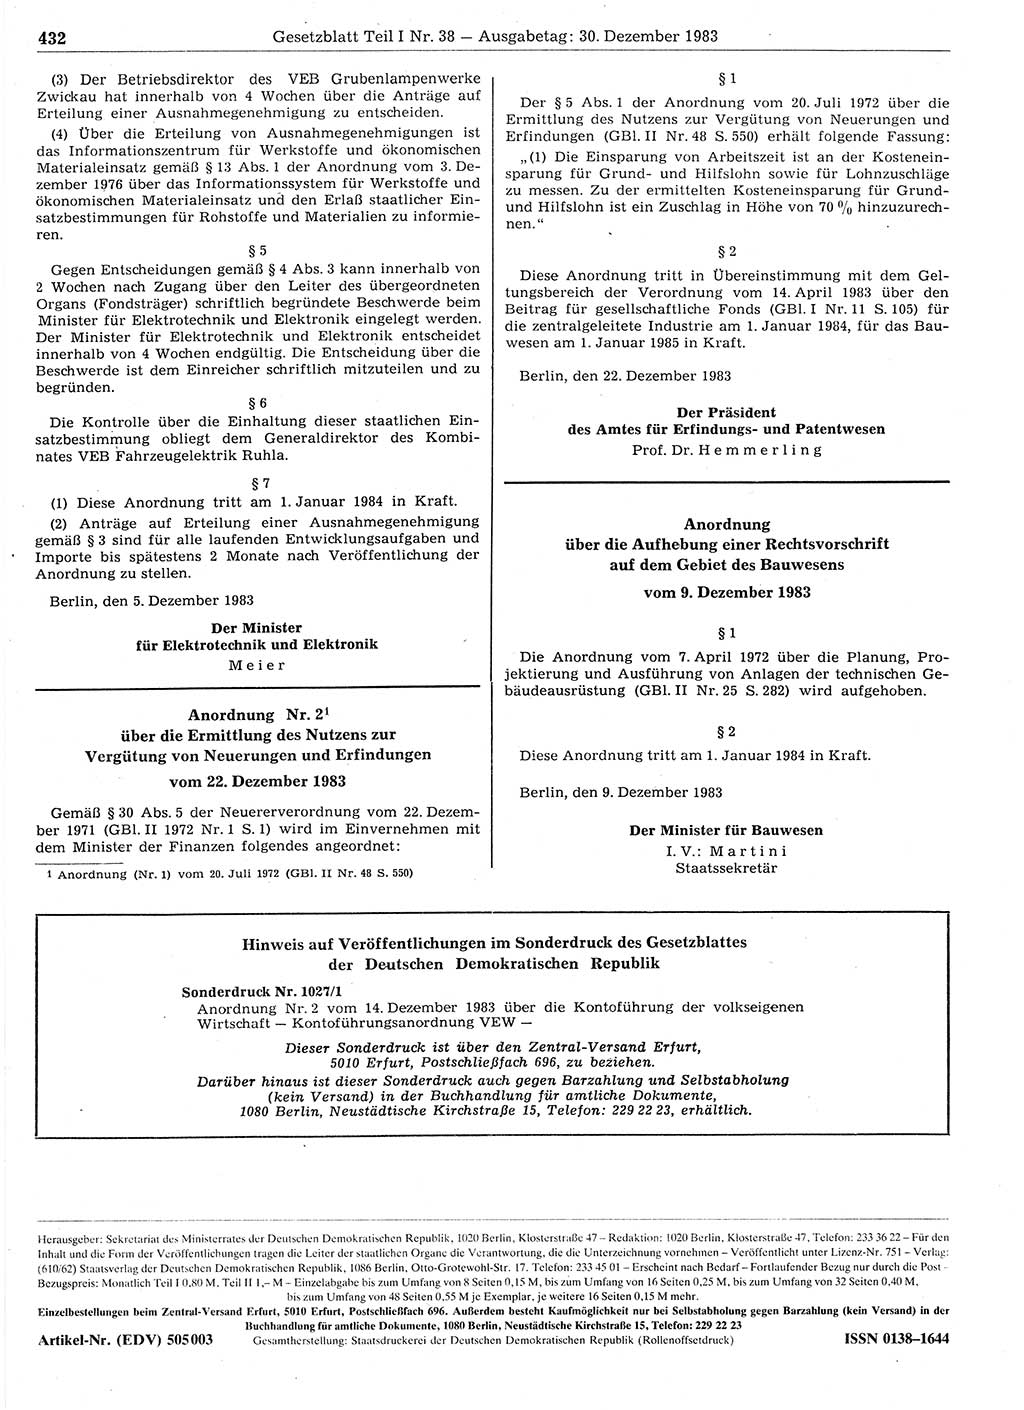 Gesetzblatt (GBl.) der Deutschen Demokratischen Republik (DDR) Teil Ⅰ 1983, Seite 432 (GBl. DDR Ⅰ 1983, S. 432)